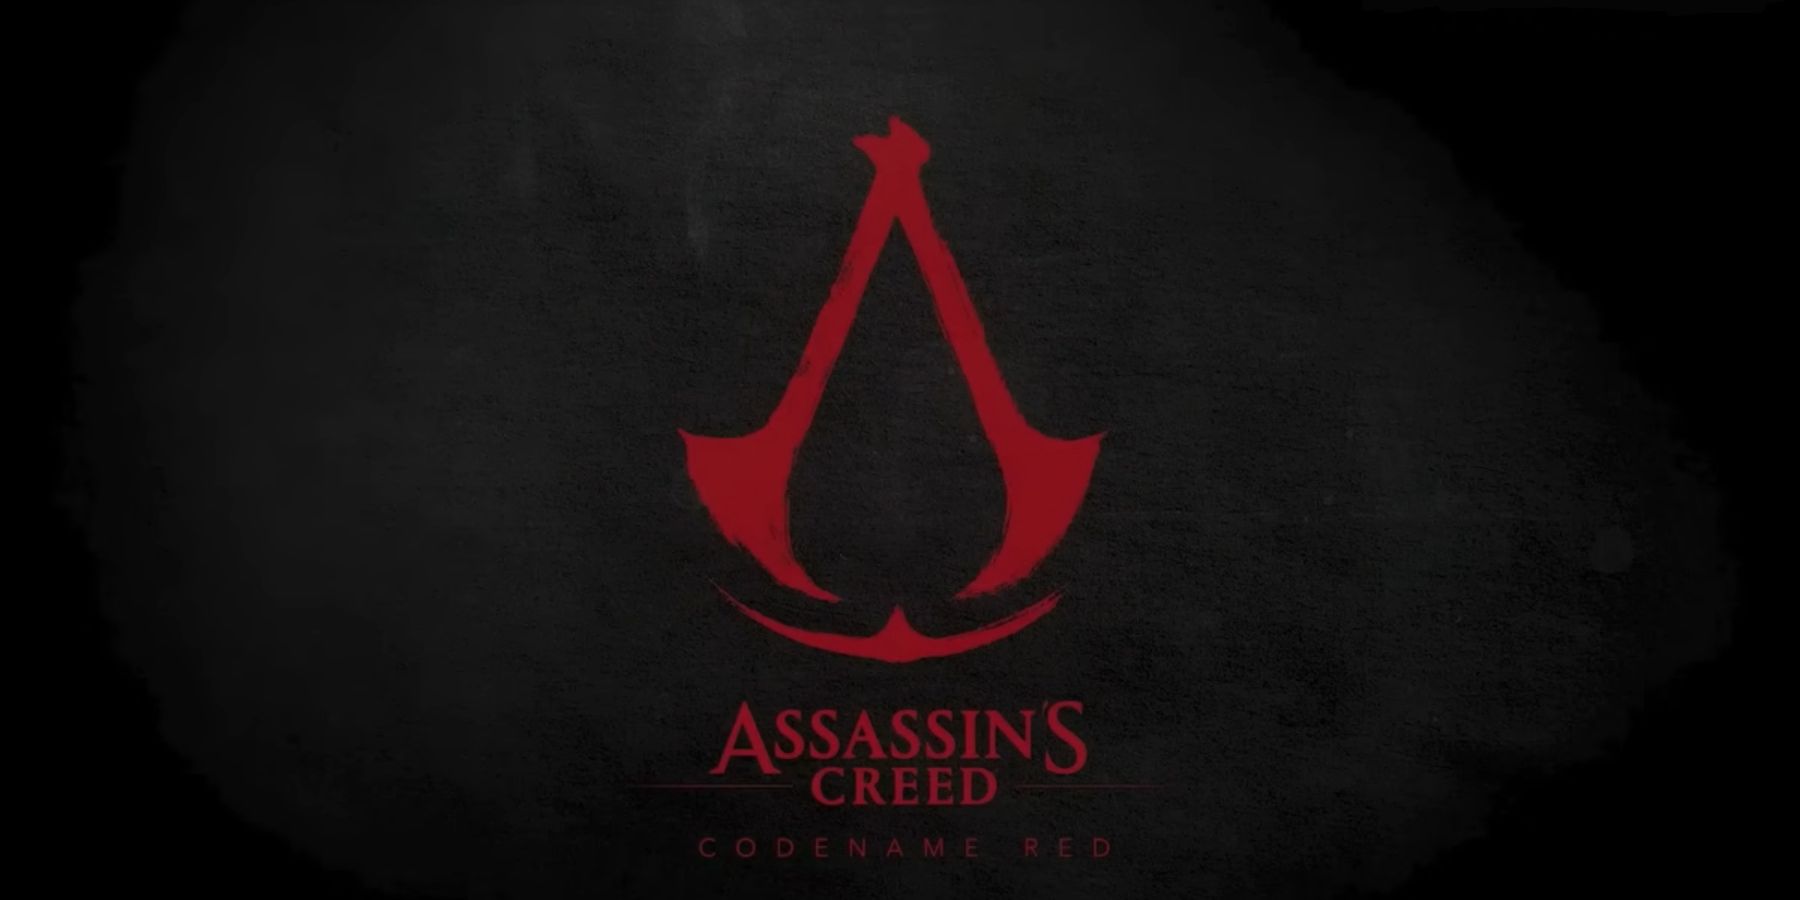 UBISOFT WERKNEMER Claims Developers hebben het bedrijf verlaten vanwege Assassin’s Creed Red Director